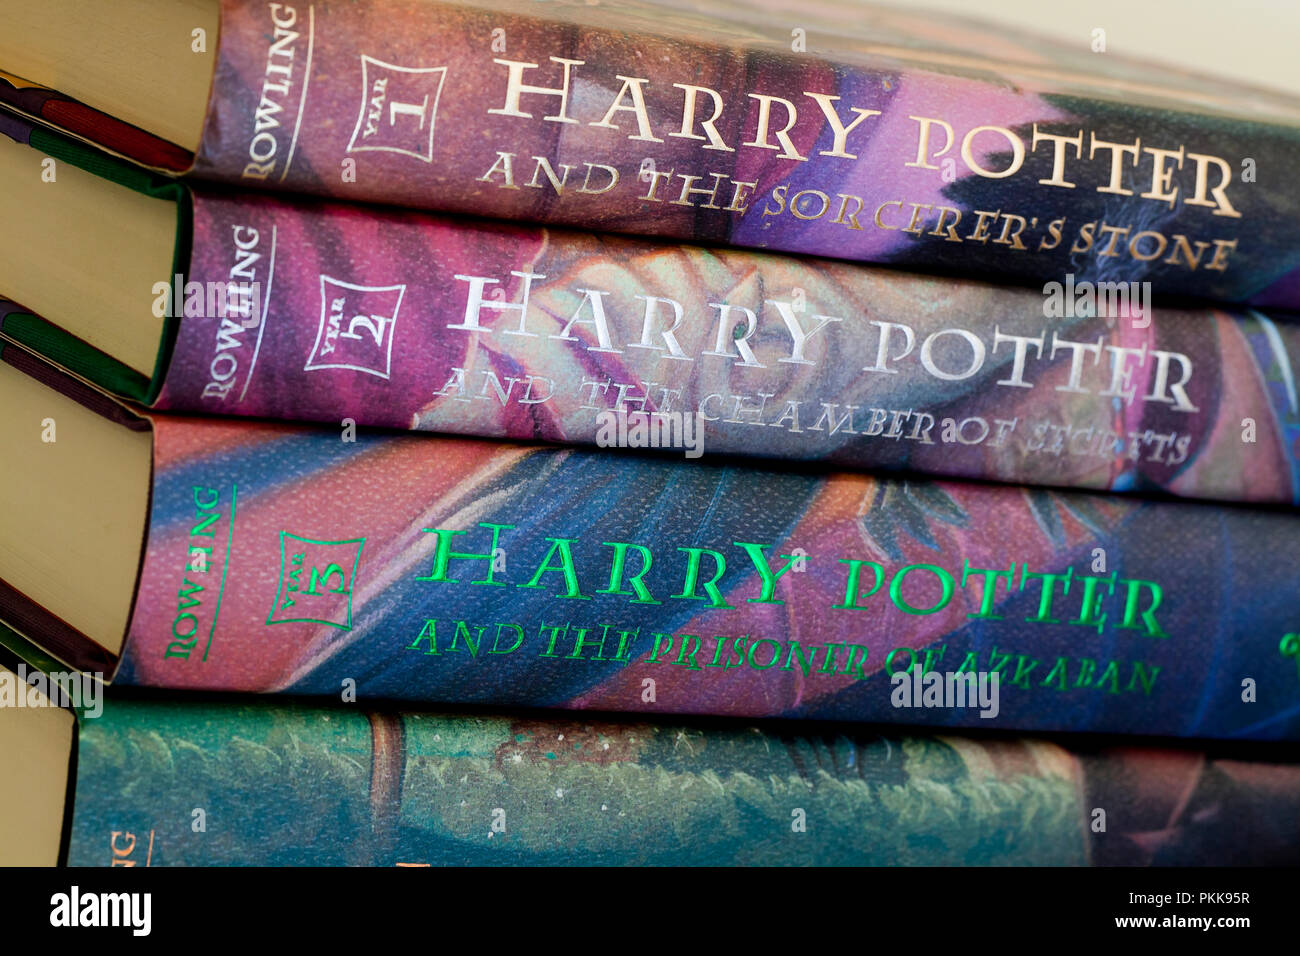 Libros de Harry Potter (libro de Harry Potter) - EE.UU Fotografía de stock  - Alamy